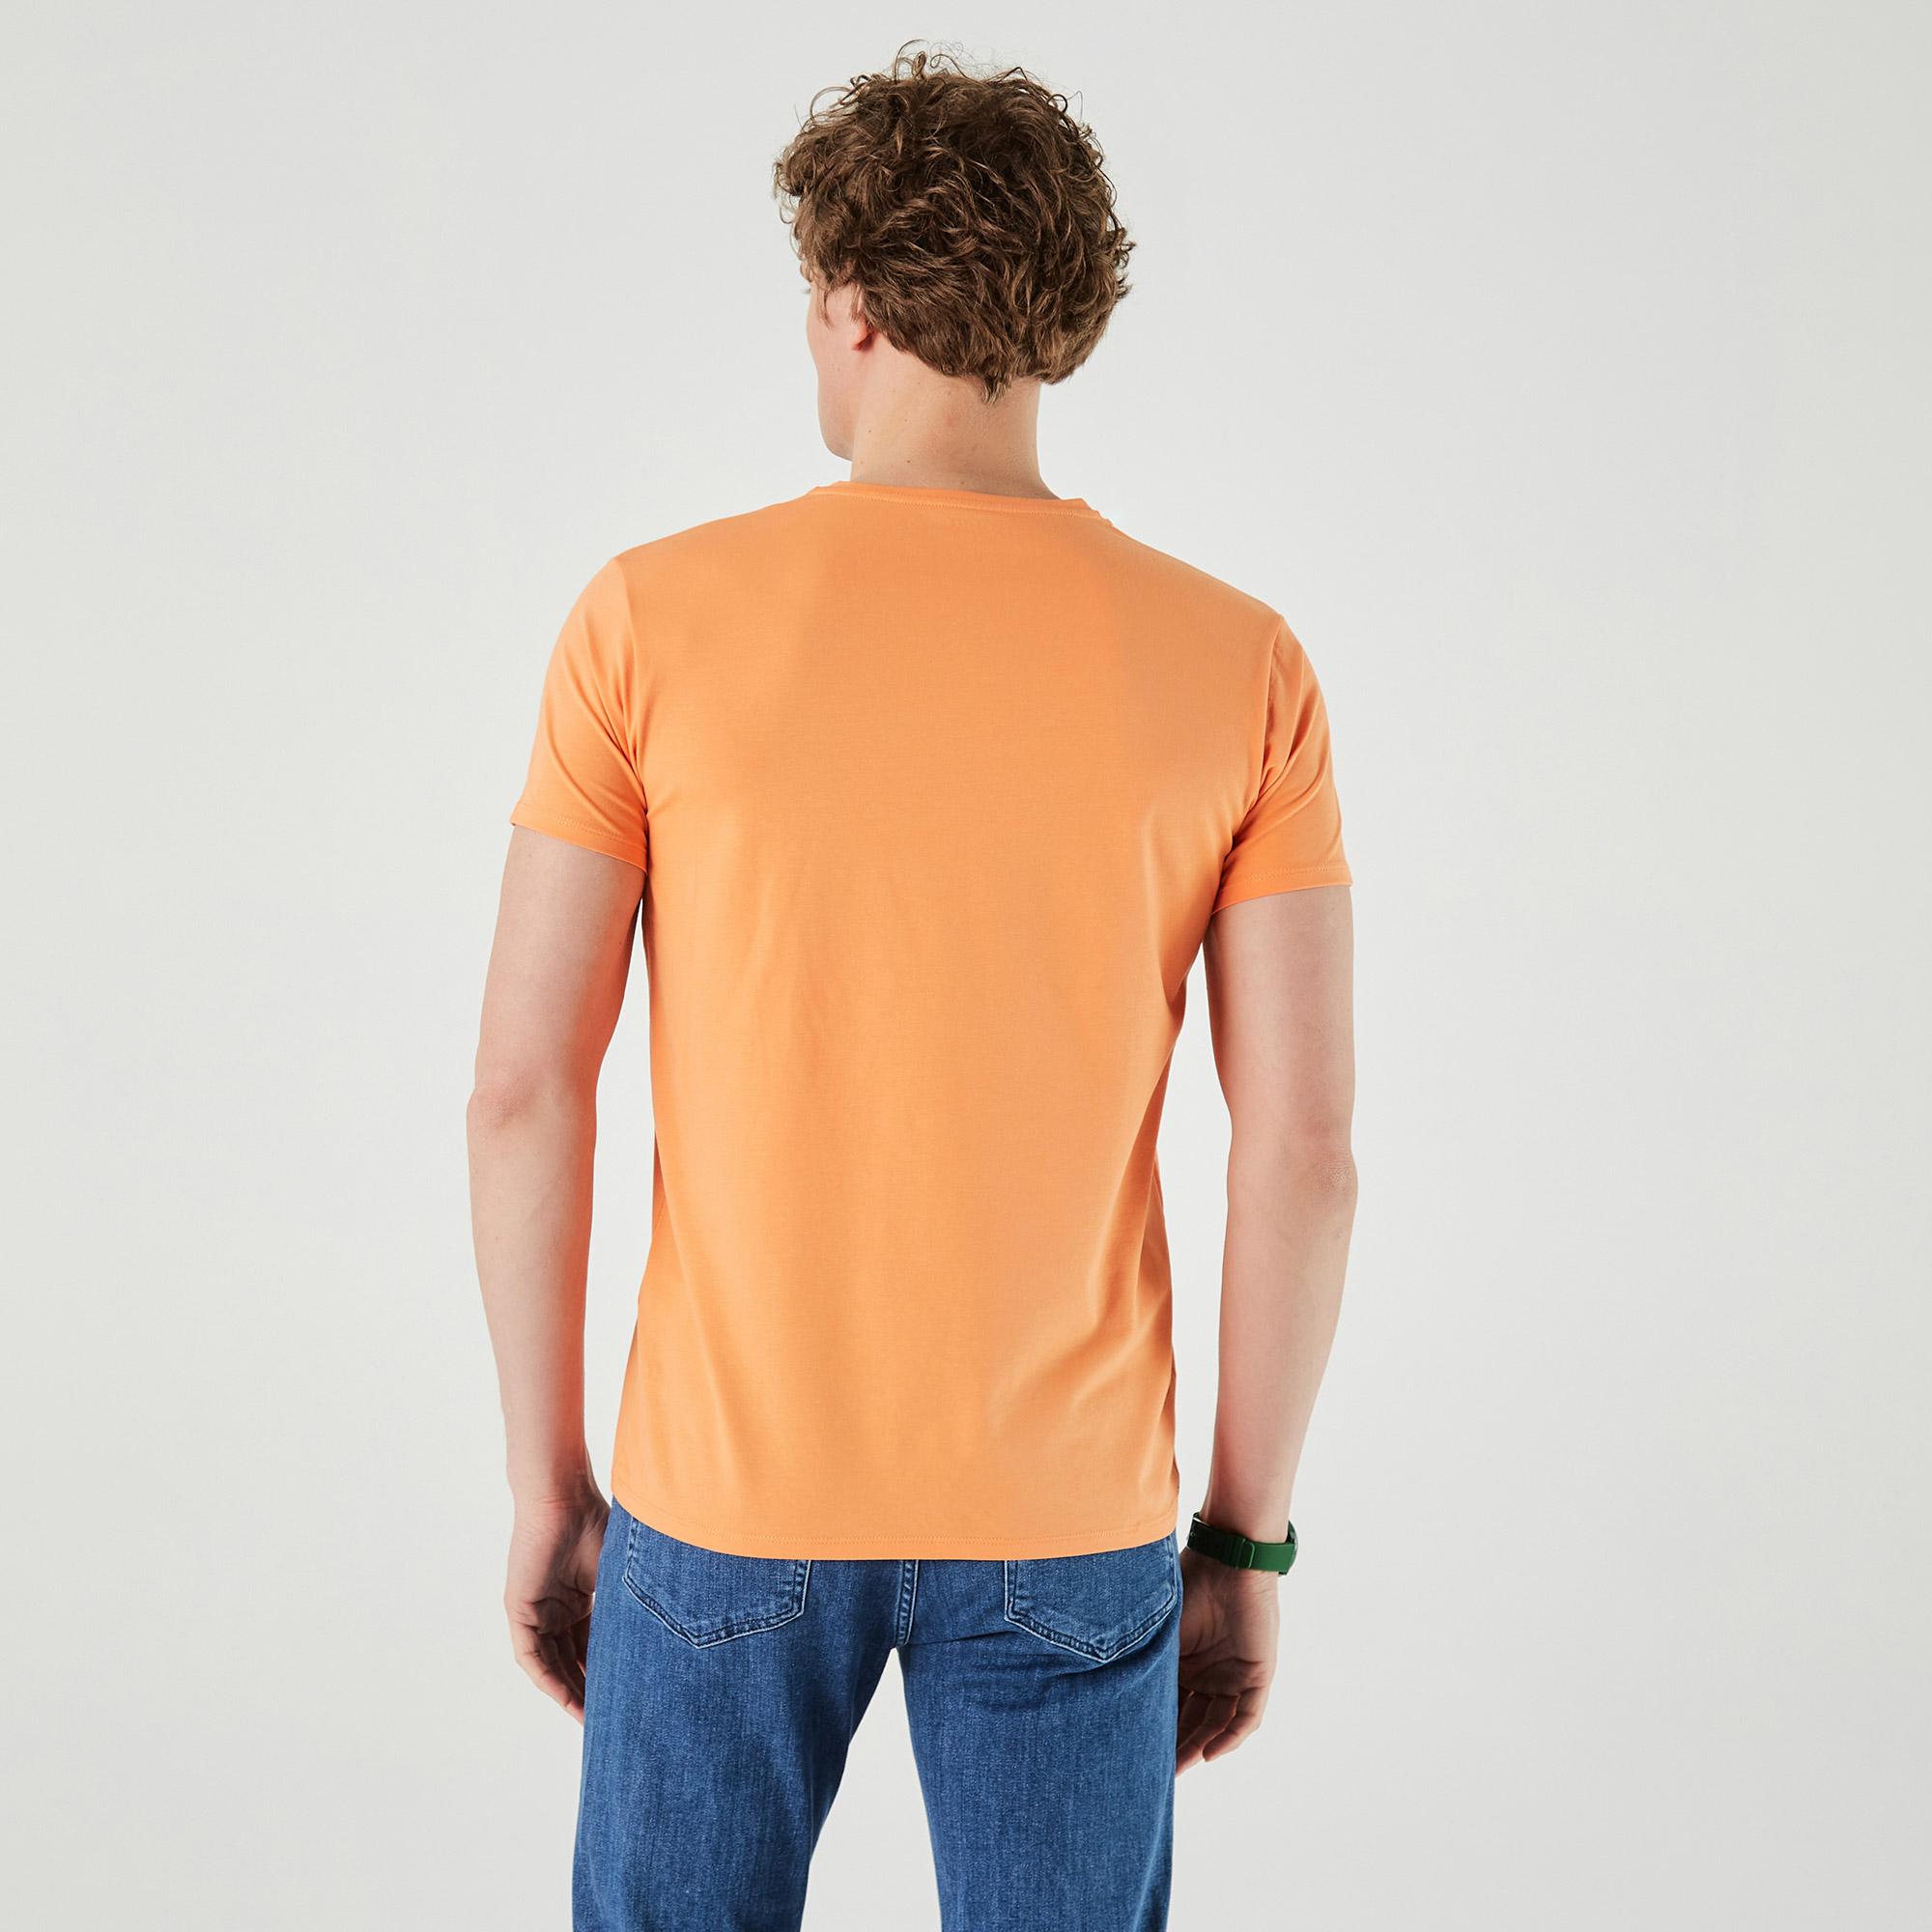 Lacoste Erkek Slim Fit V Yaka Turuncu T-Shirt. 3